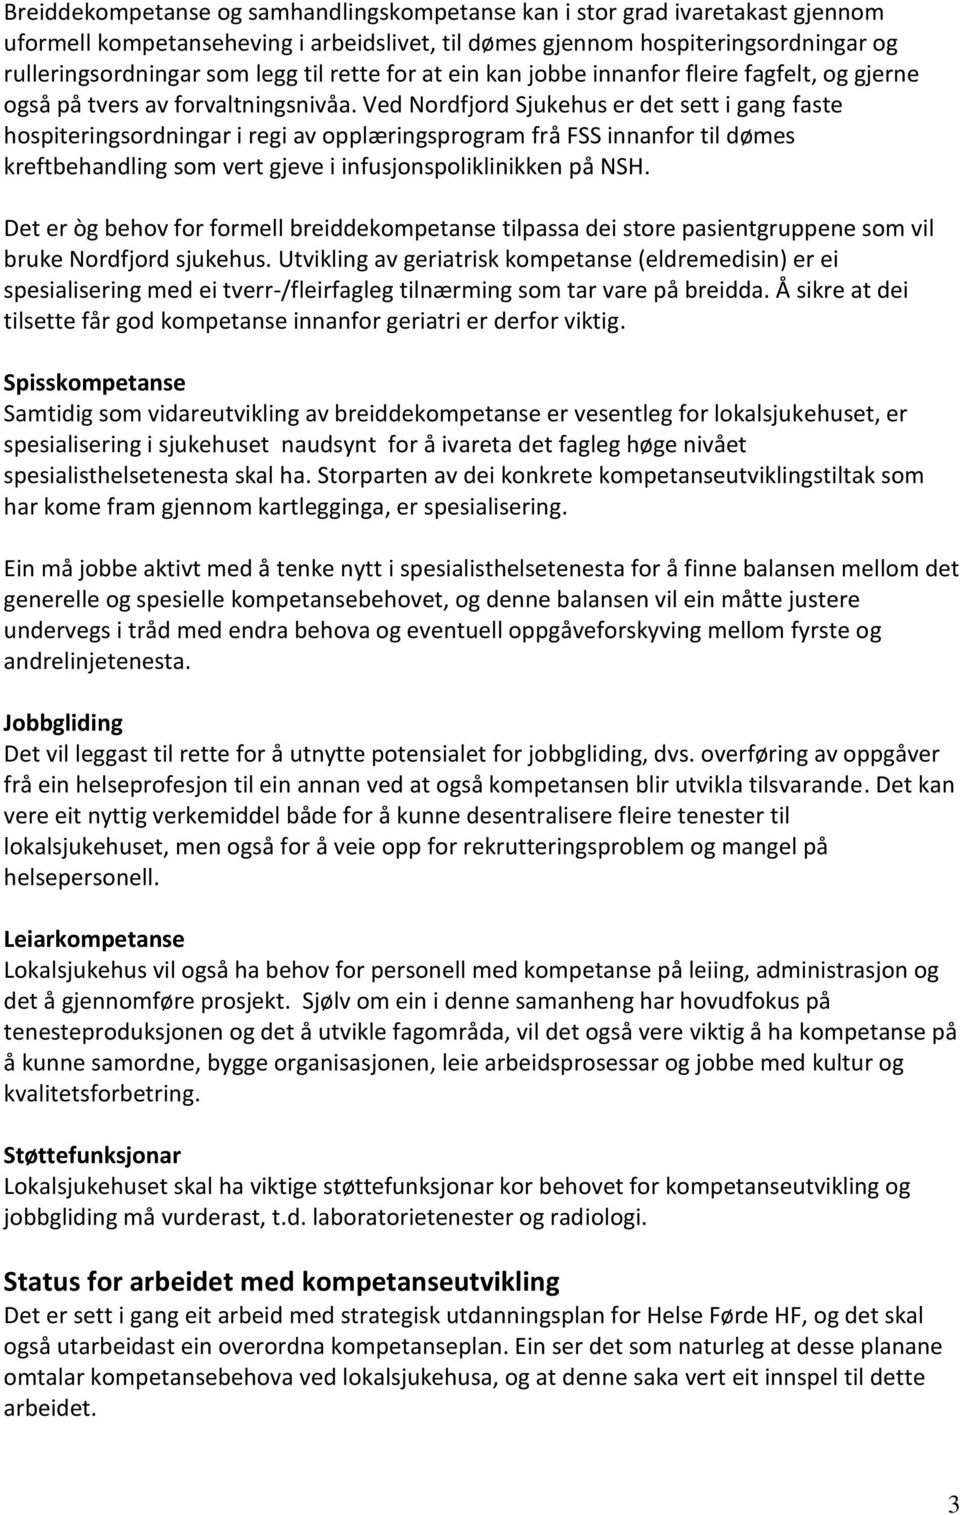 Ved Nordfjord Sjukehus er det sett i gang faste hospiteringsordningar i regi av opplæringsprogram frå FSS innanfor til dømes kreftbehandling som vert gjeve i infusjonspoliklinikken på NSH.